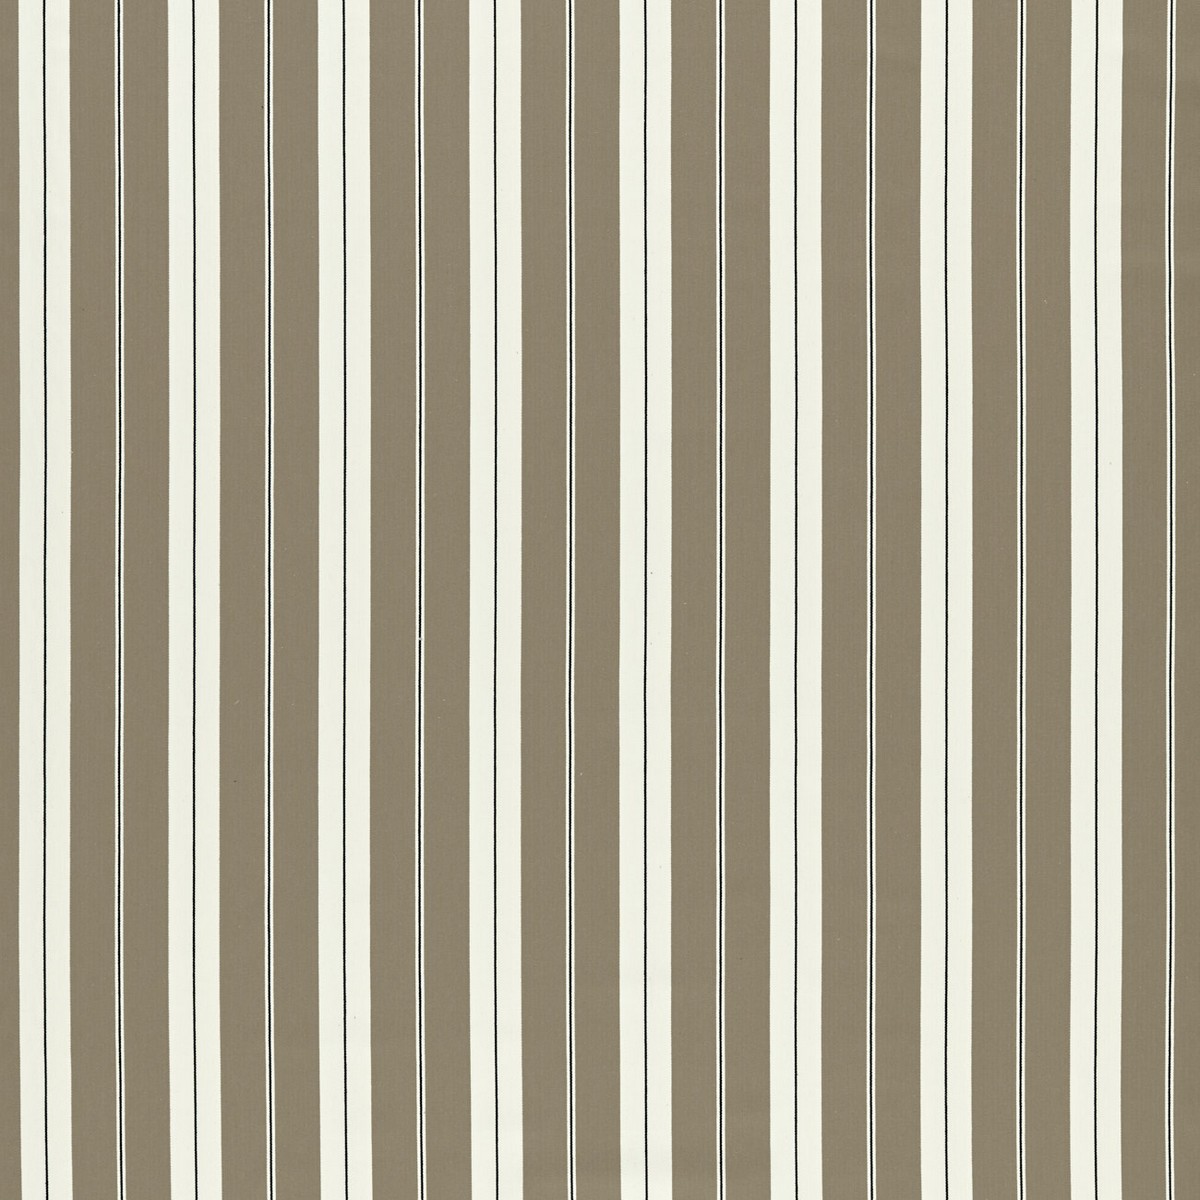 Belgravia Charcoal/Linen Fabric by Clarke & Clarke